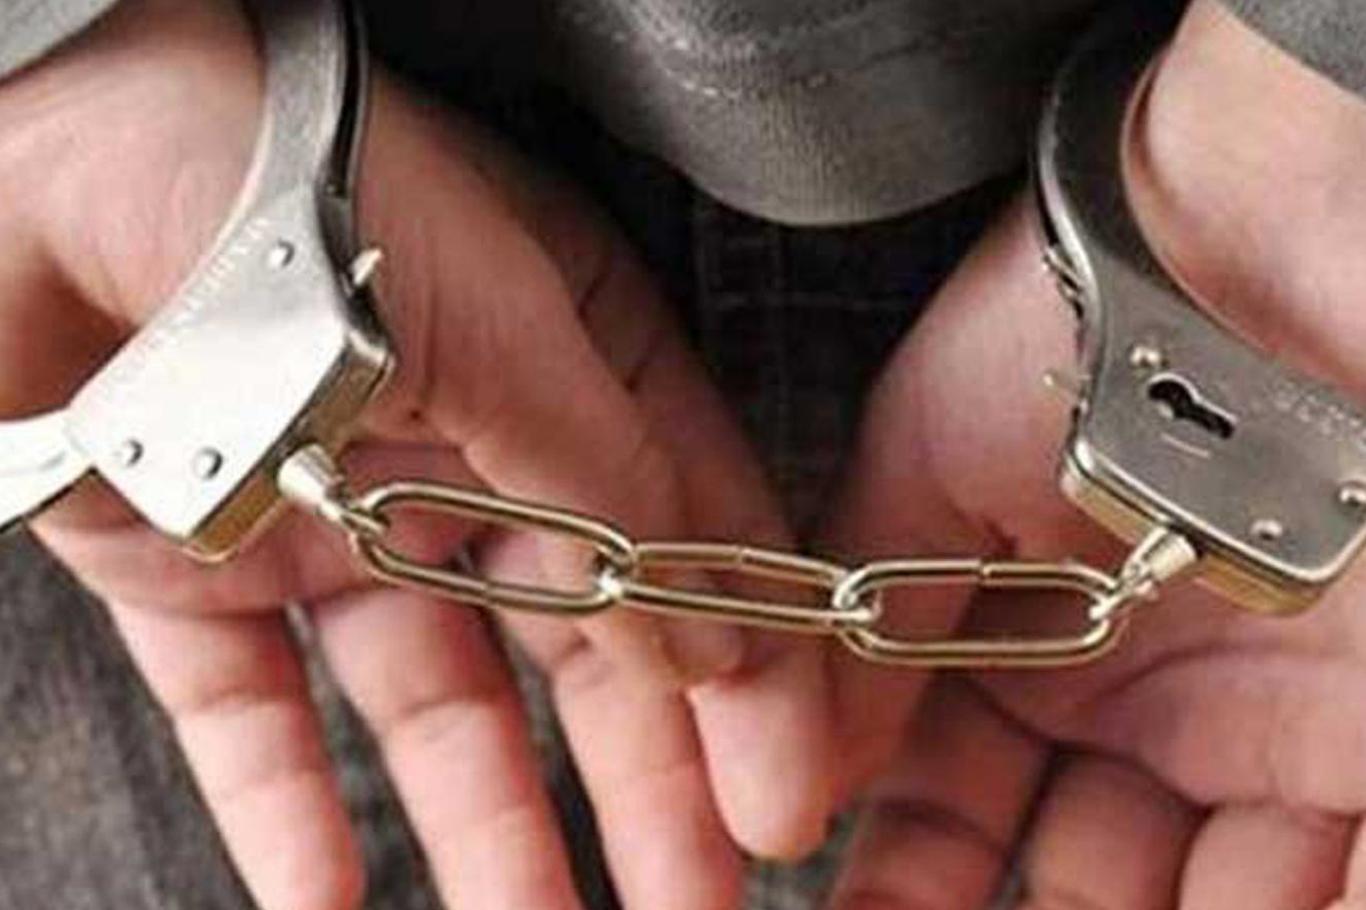 Maçka İlçe Jandarma Komutanı gözaltına alındı